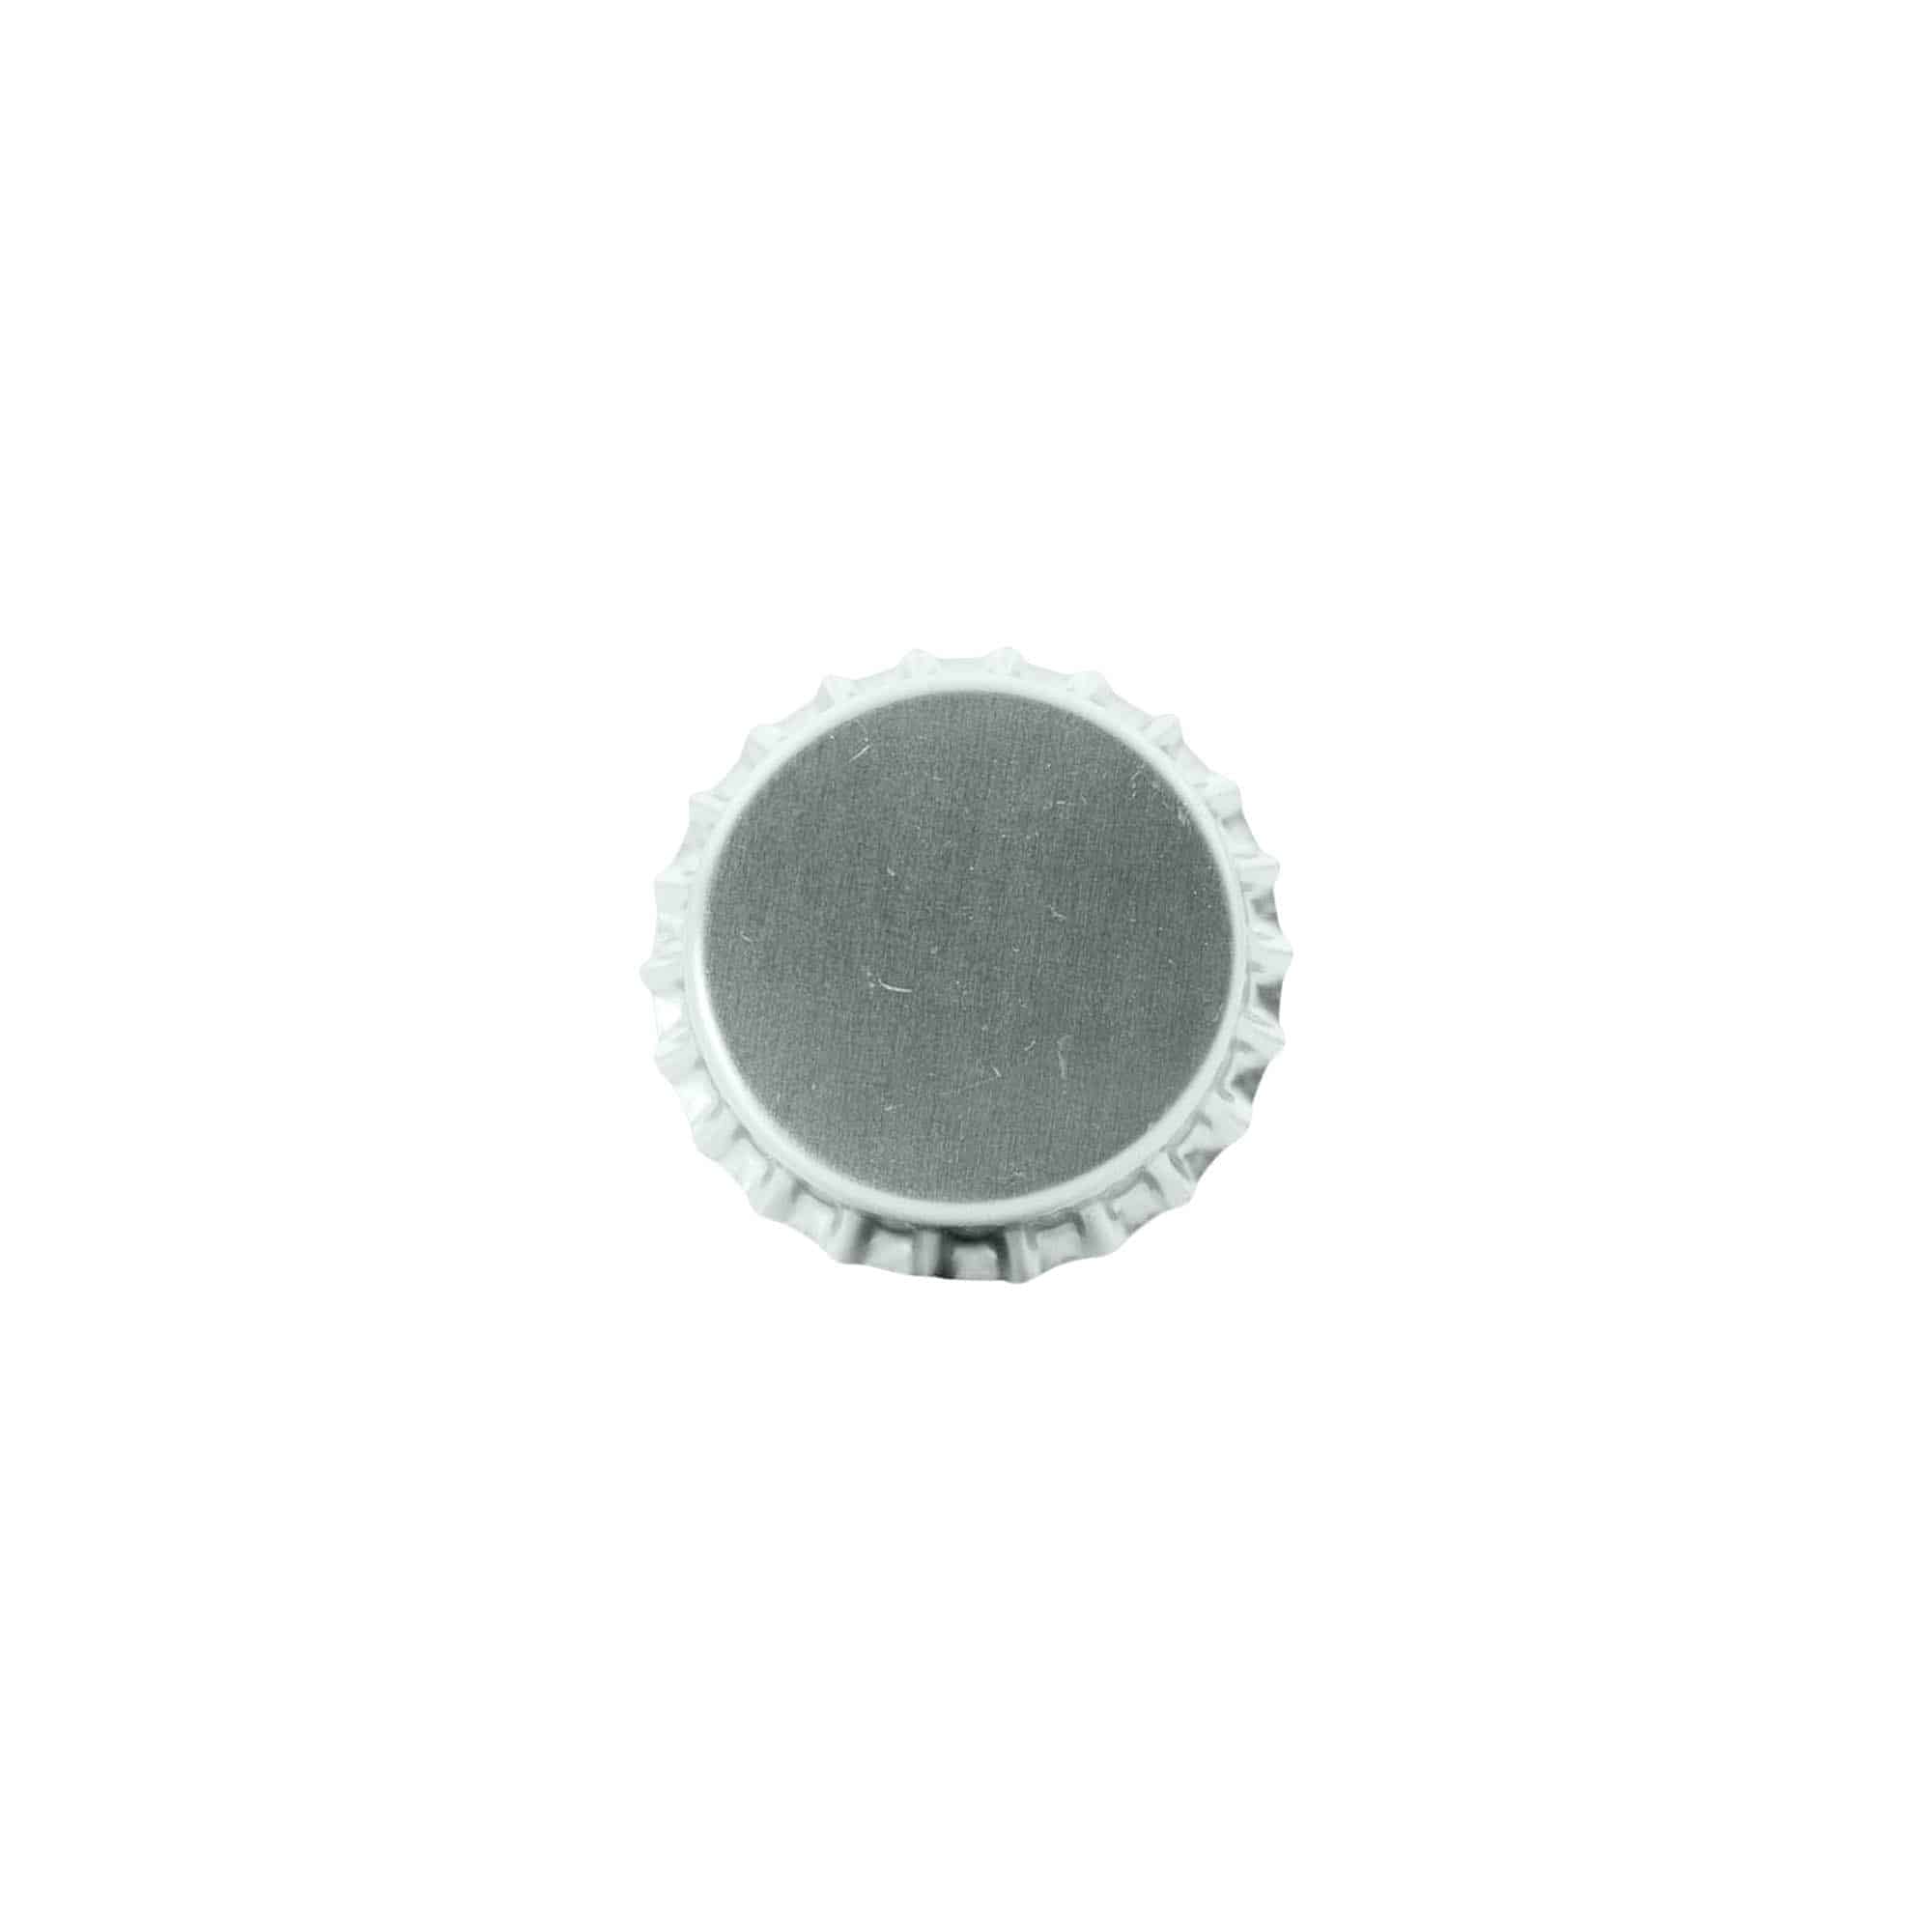 Capsules couronnes 29 mm, métal, argenté